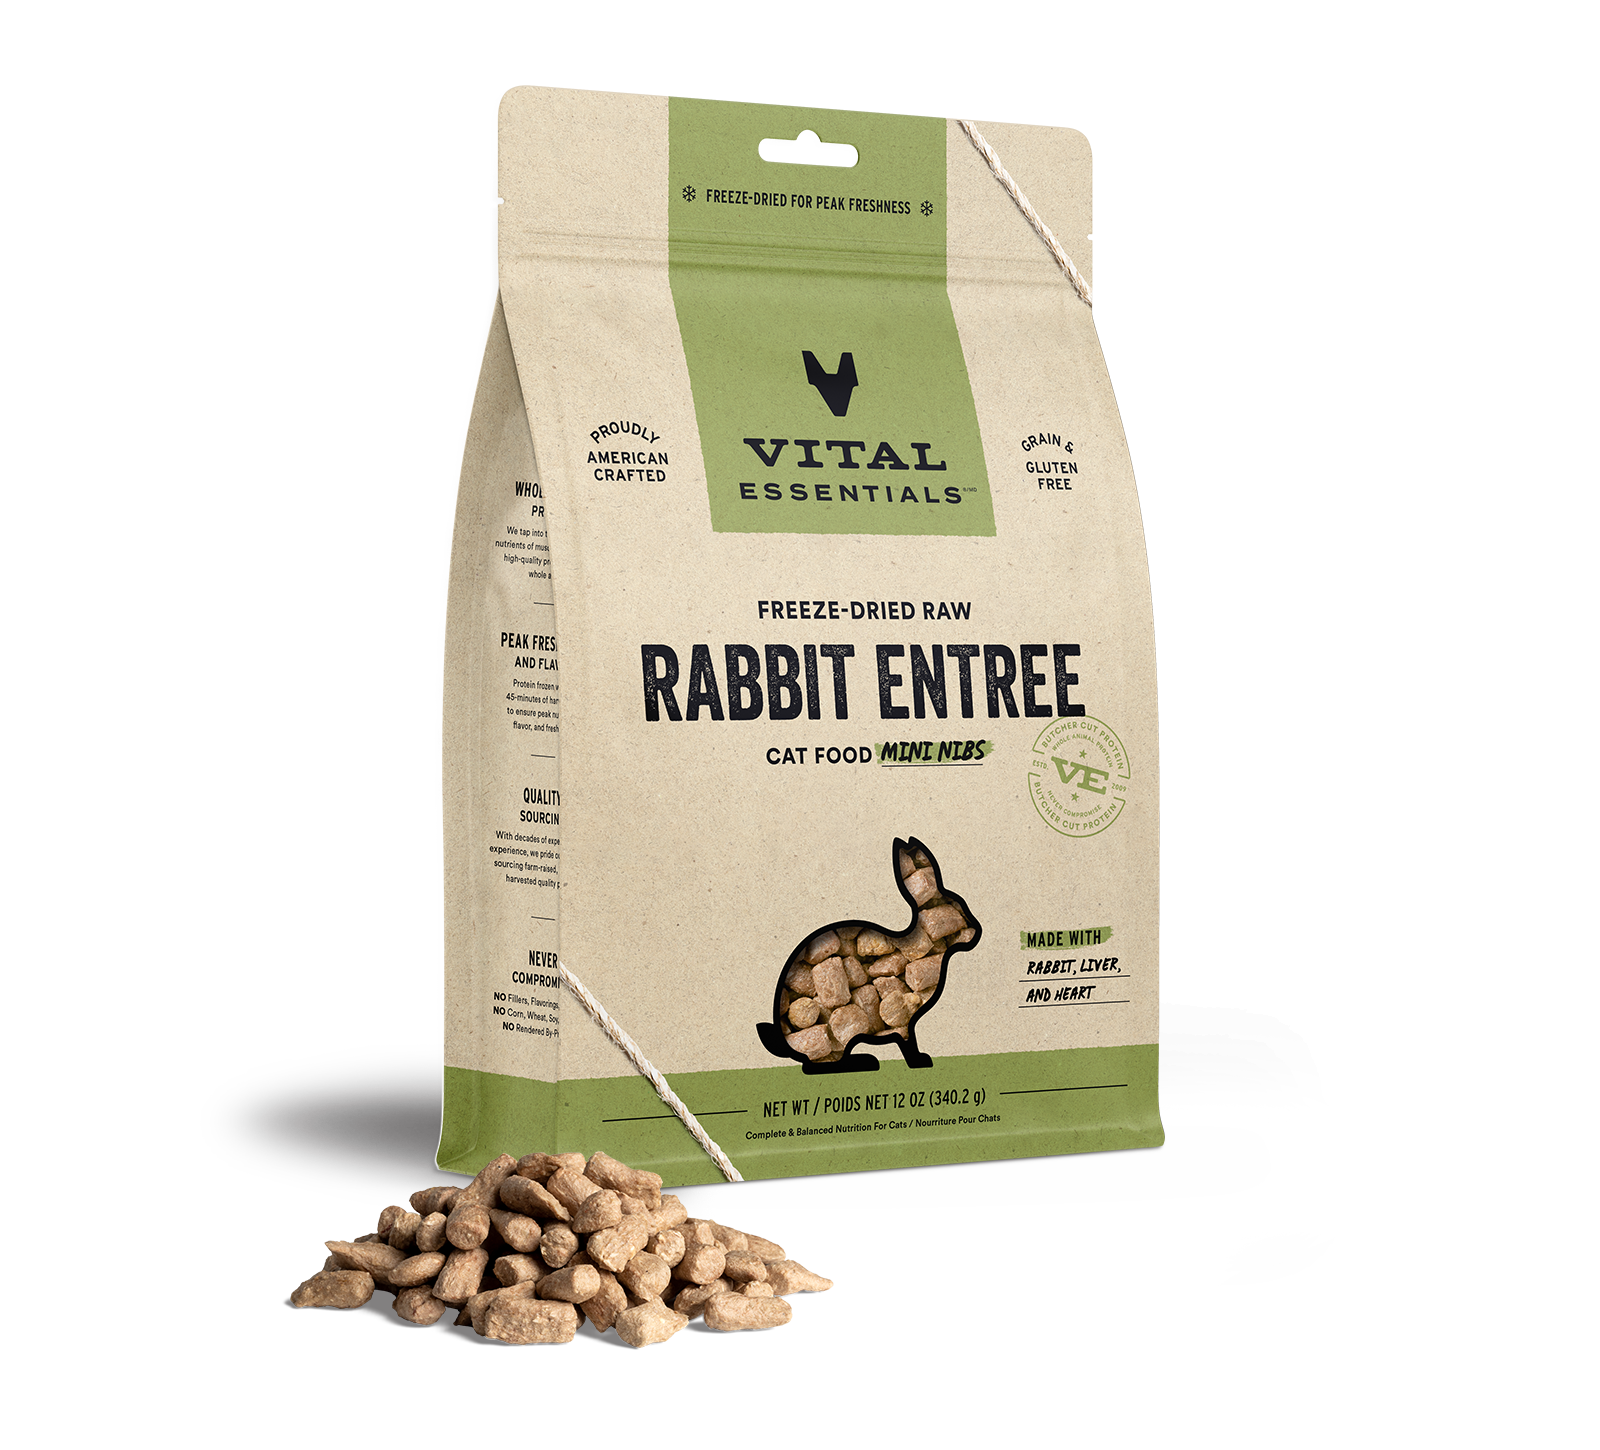 Vital Essentials Freeze-Dried Raw Rabbit Entree Cat Food Mini Nibs, 12 oz - Items on Sale Now